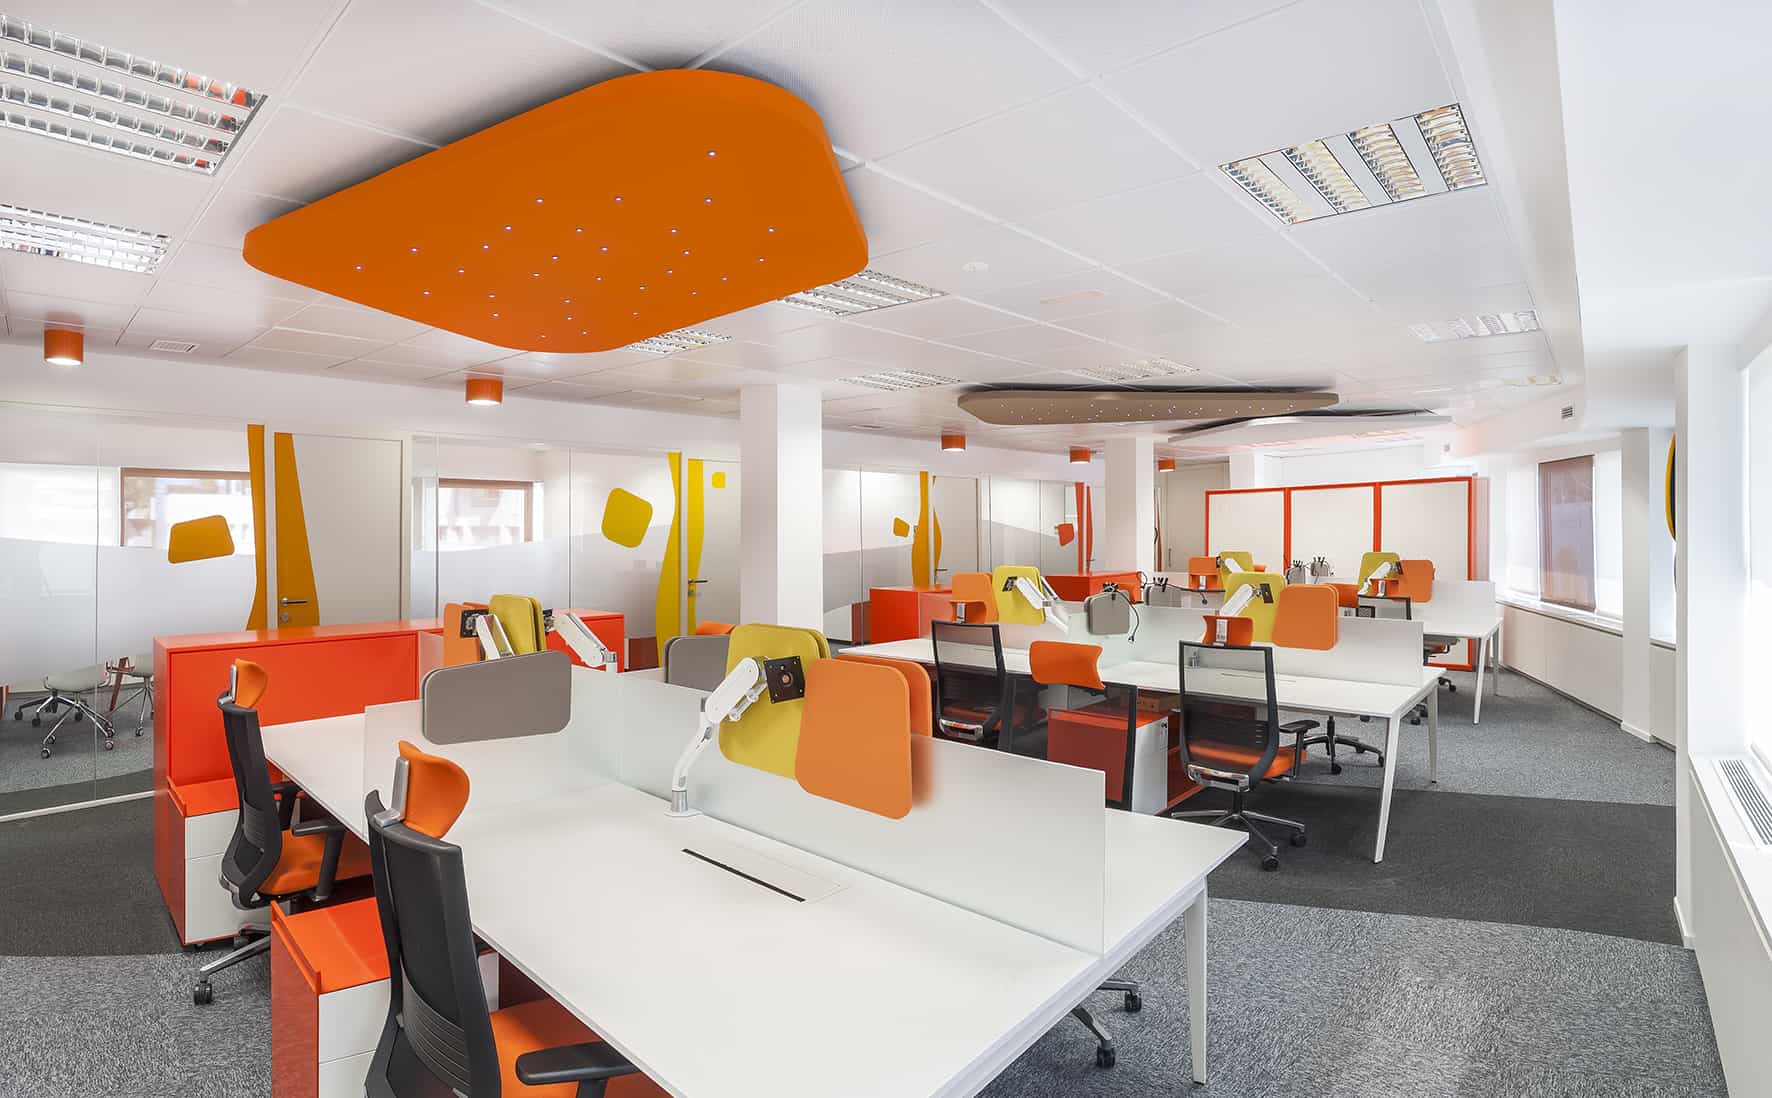 Philip Morris_Galería_zona de trabajo con puestos operativos en color naranja